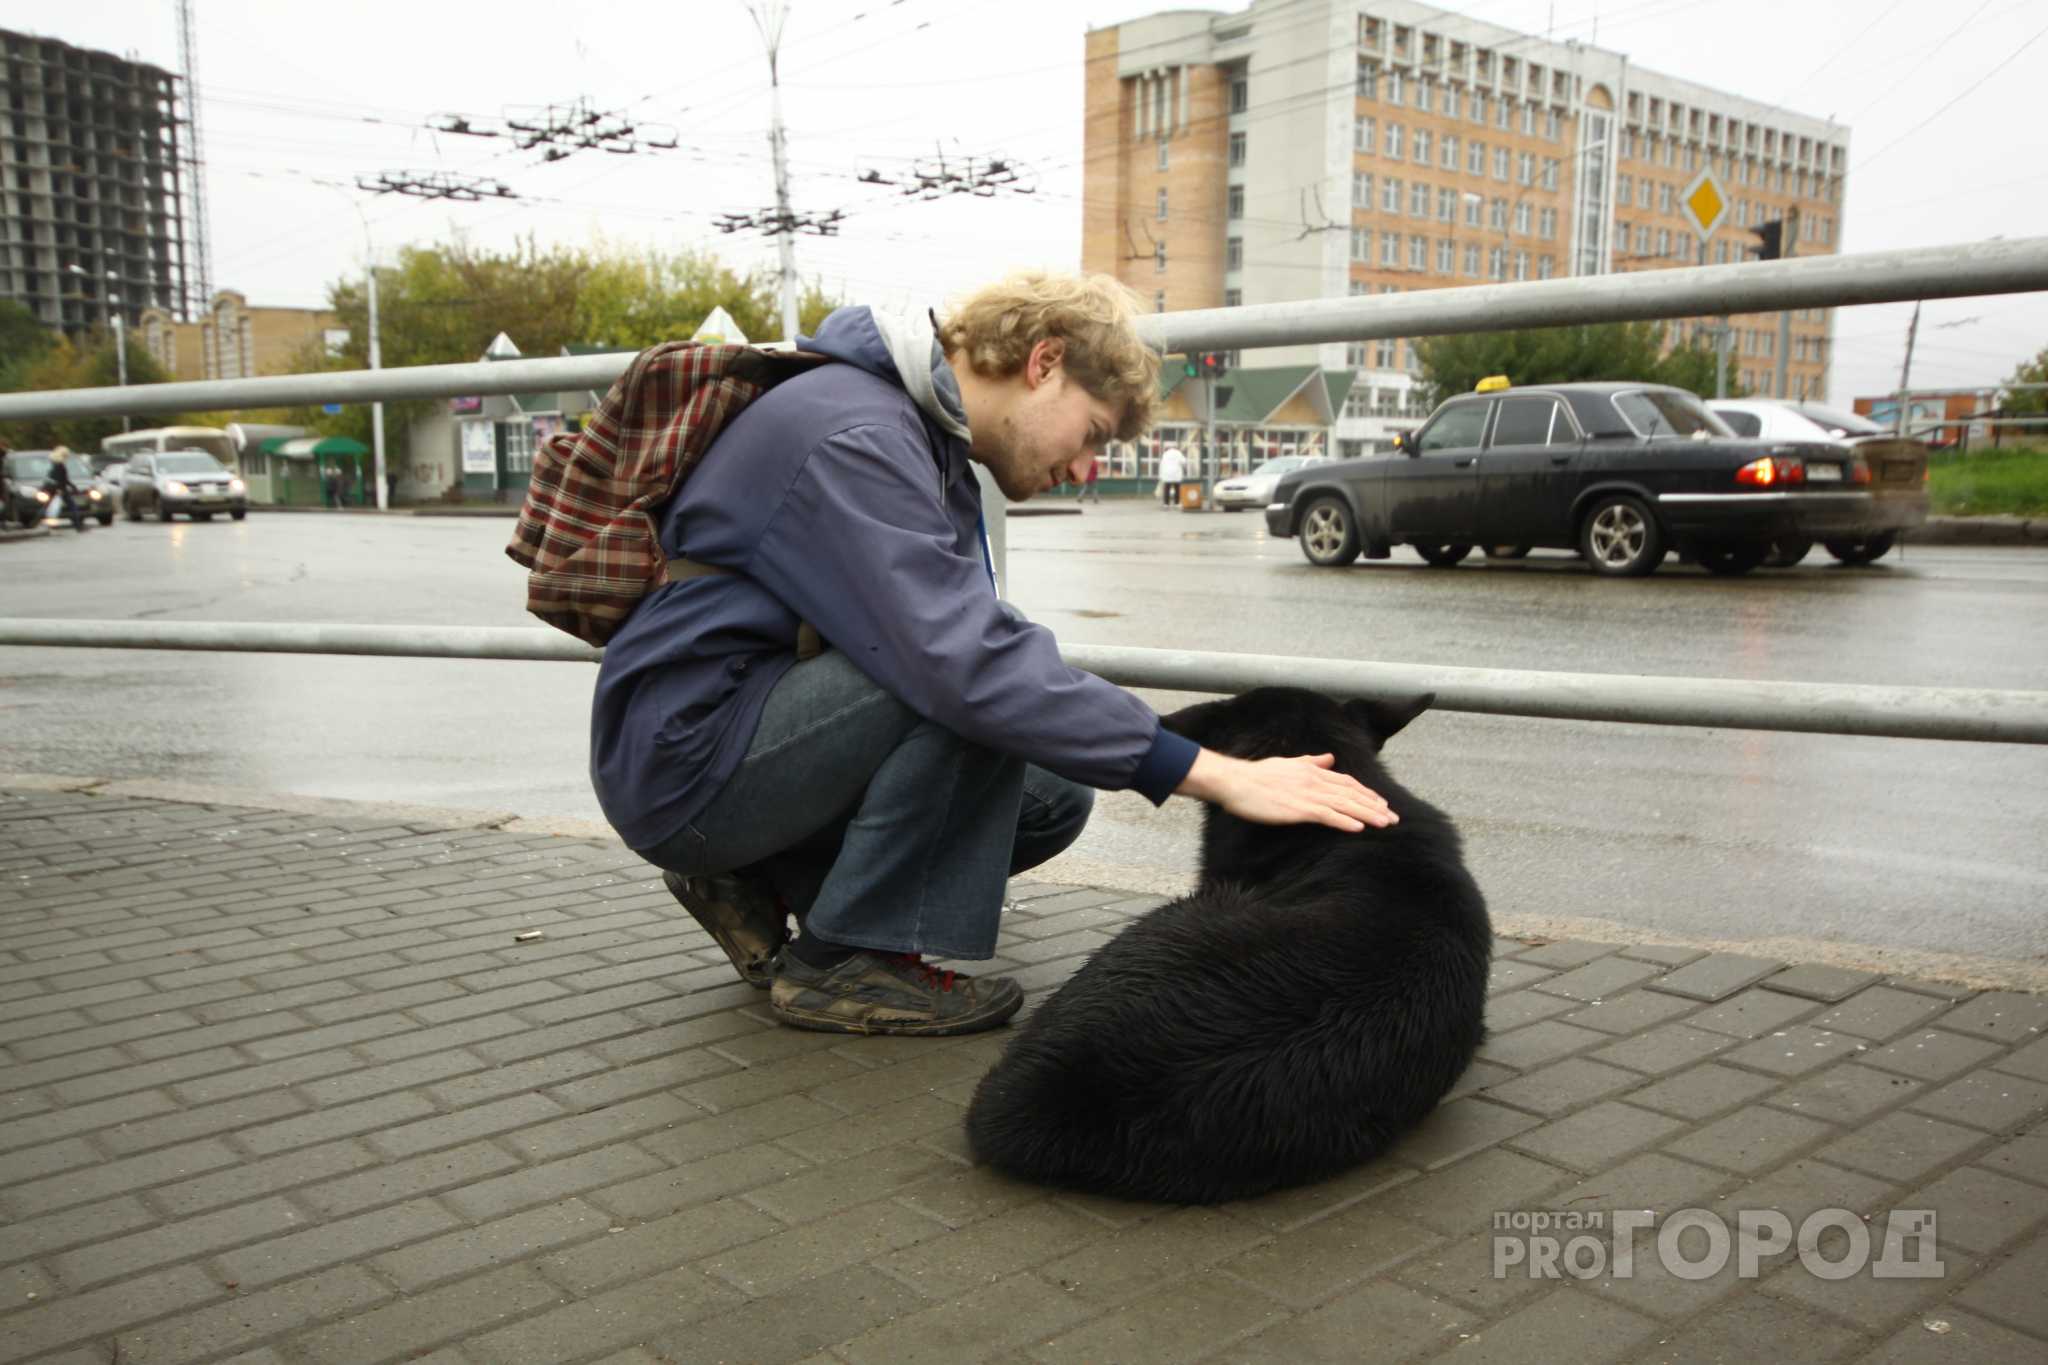 В Йошкар-Оле запустили проект по поиску домашних животных